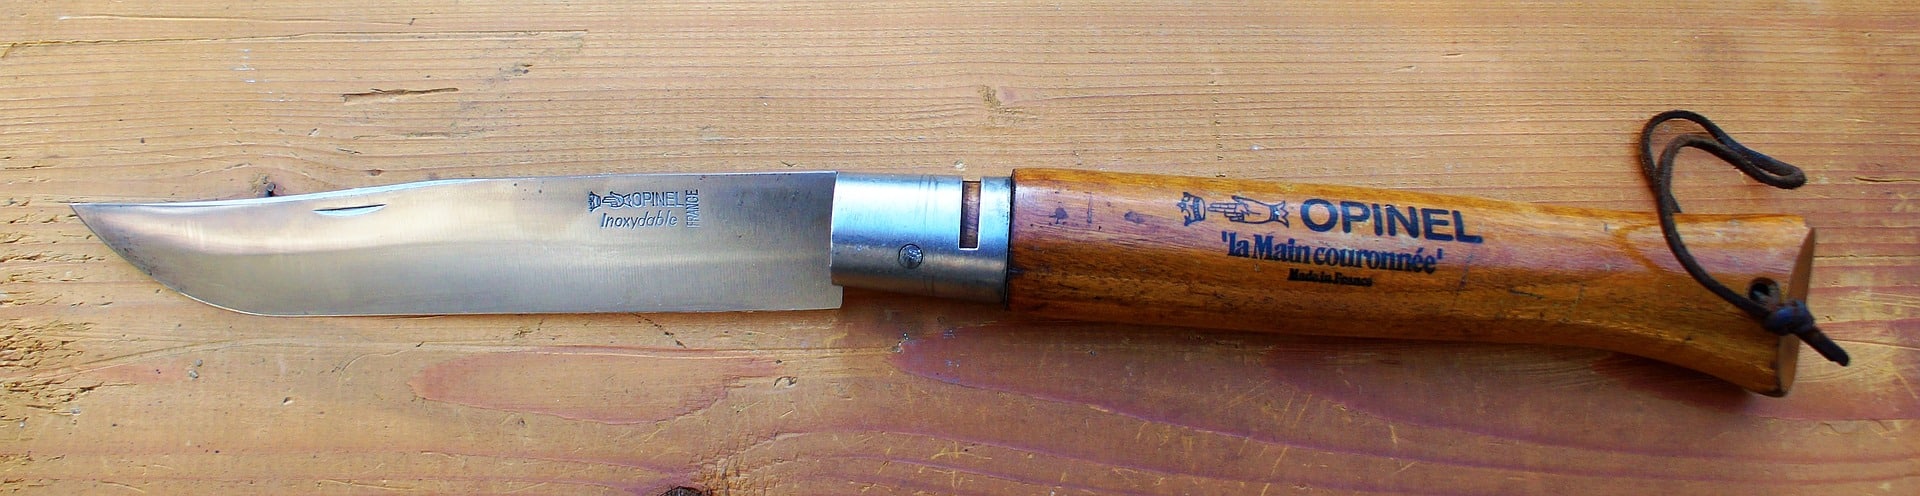 Open Opinel knife